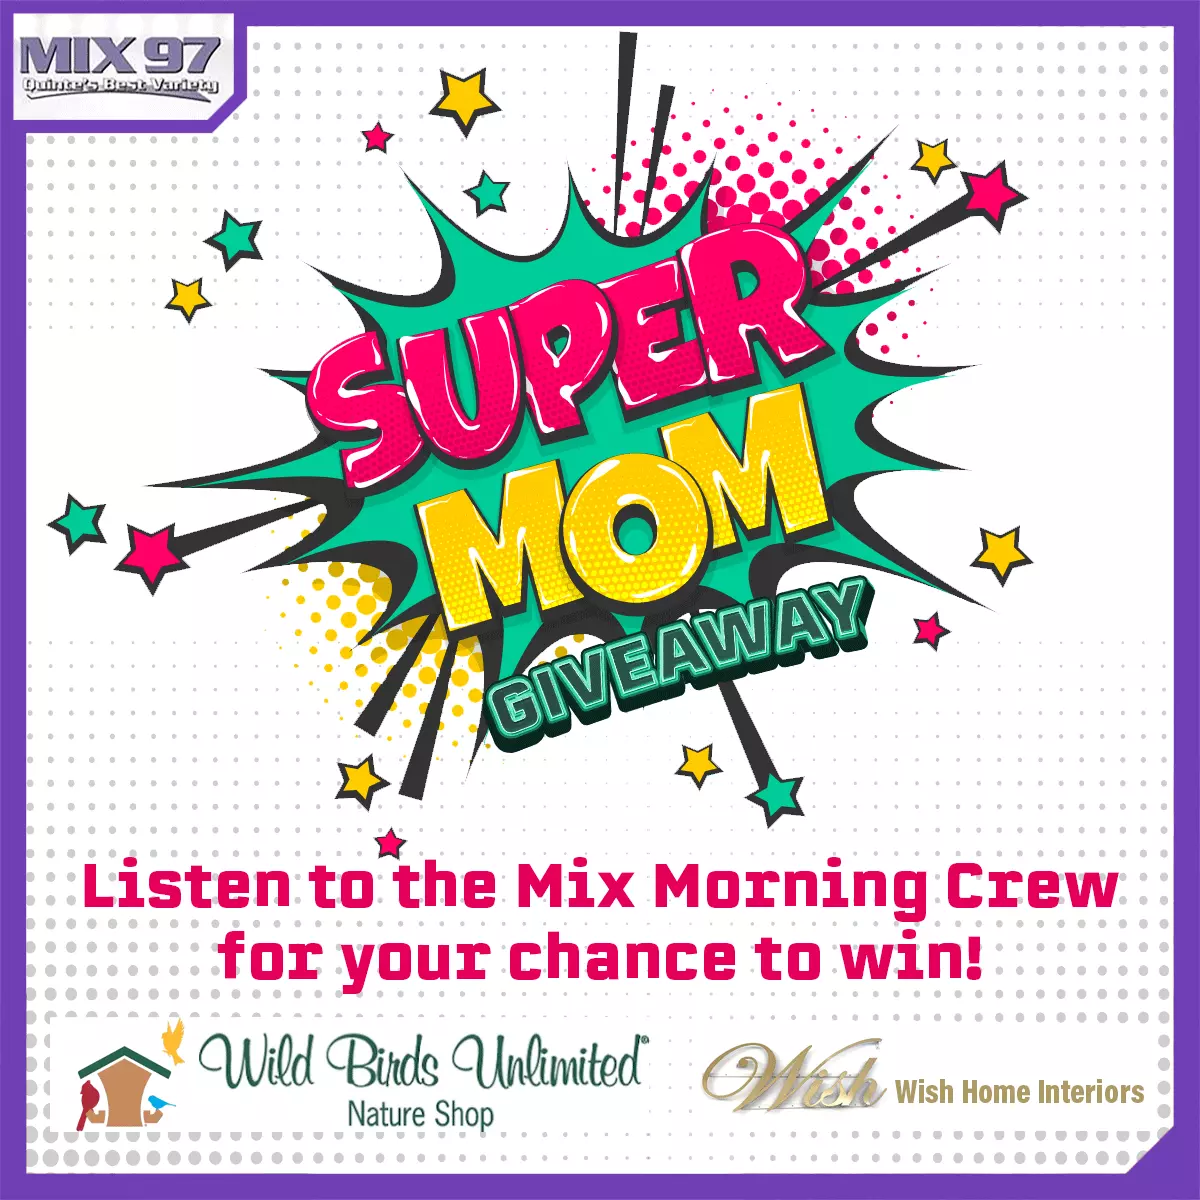 Feature: https://mix97.com/contest-super-mom-giveaway/